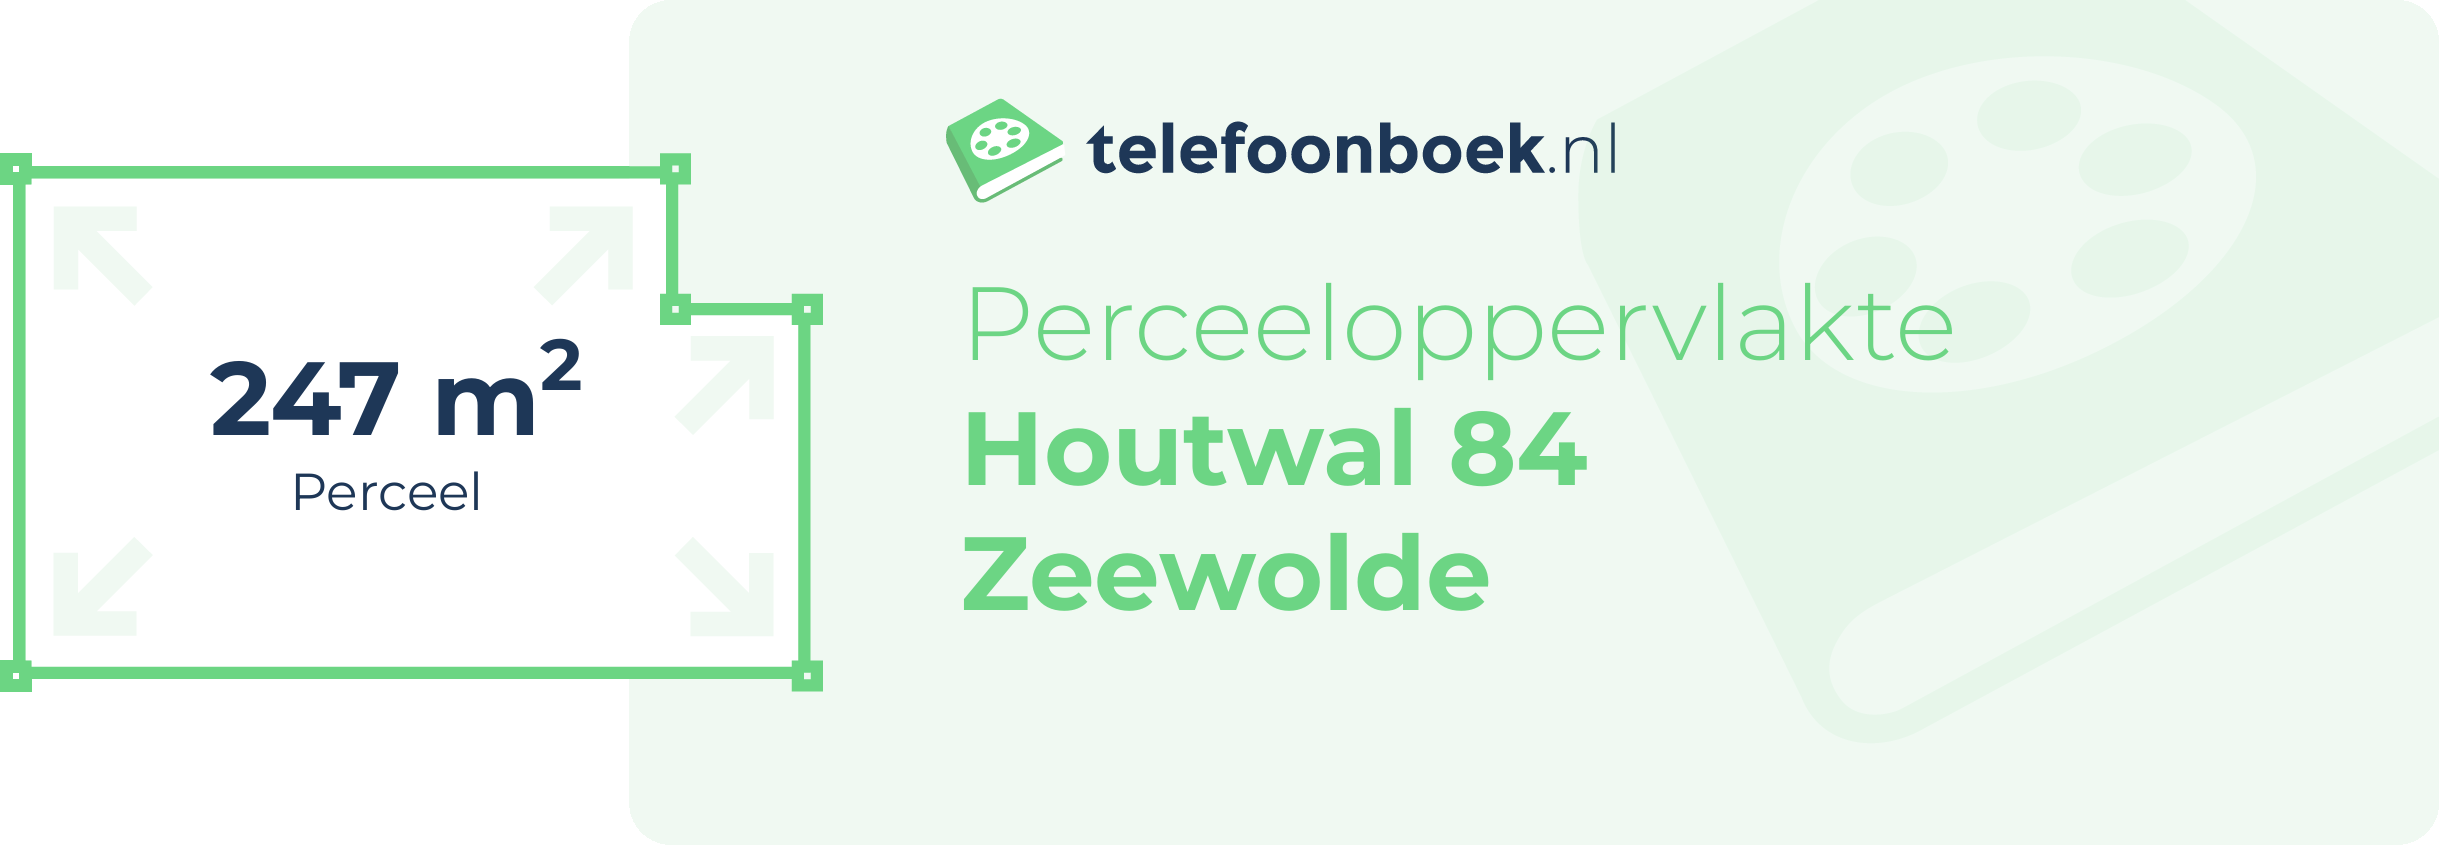 Perceeloppervlakte Houtwal 84 Zeewolde